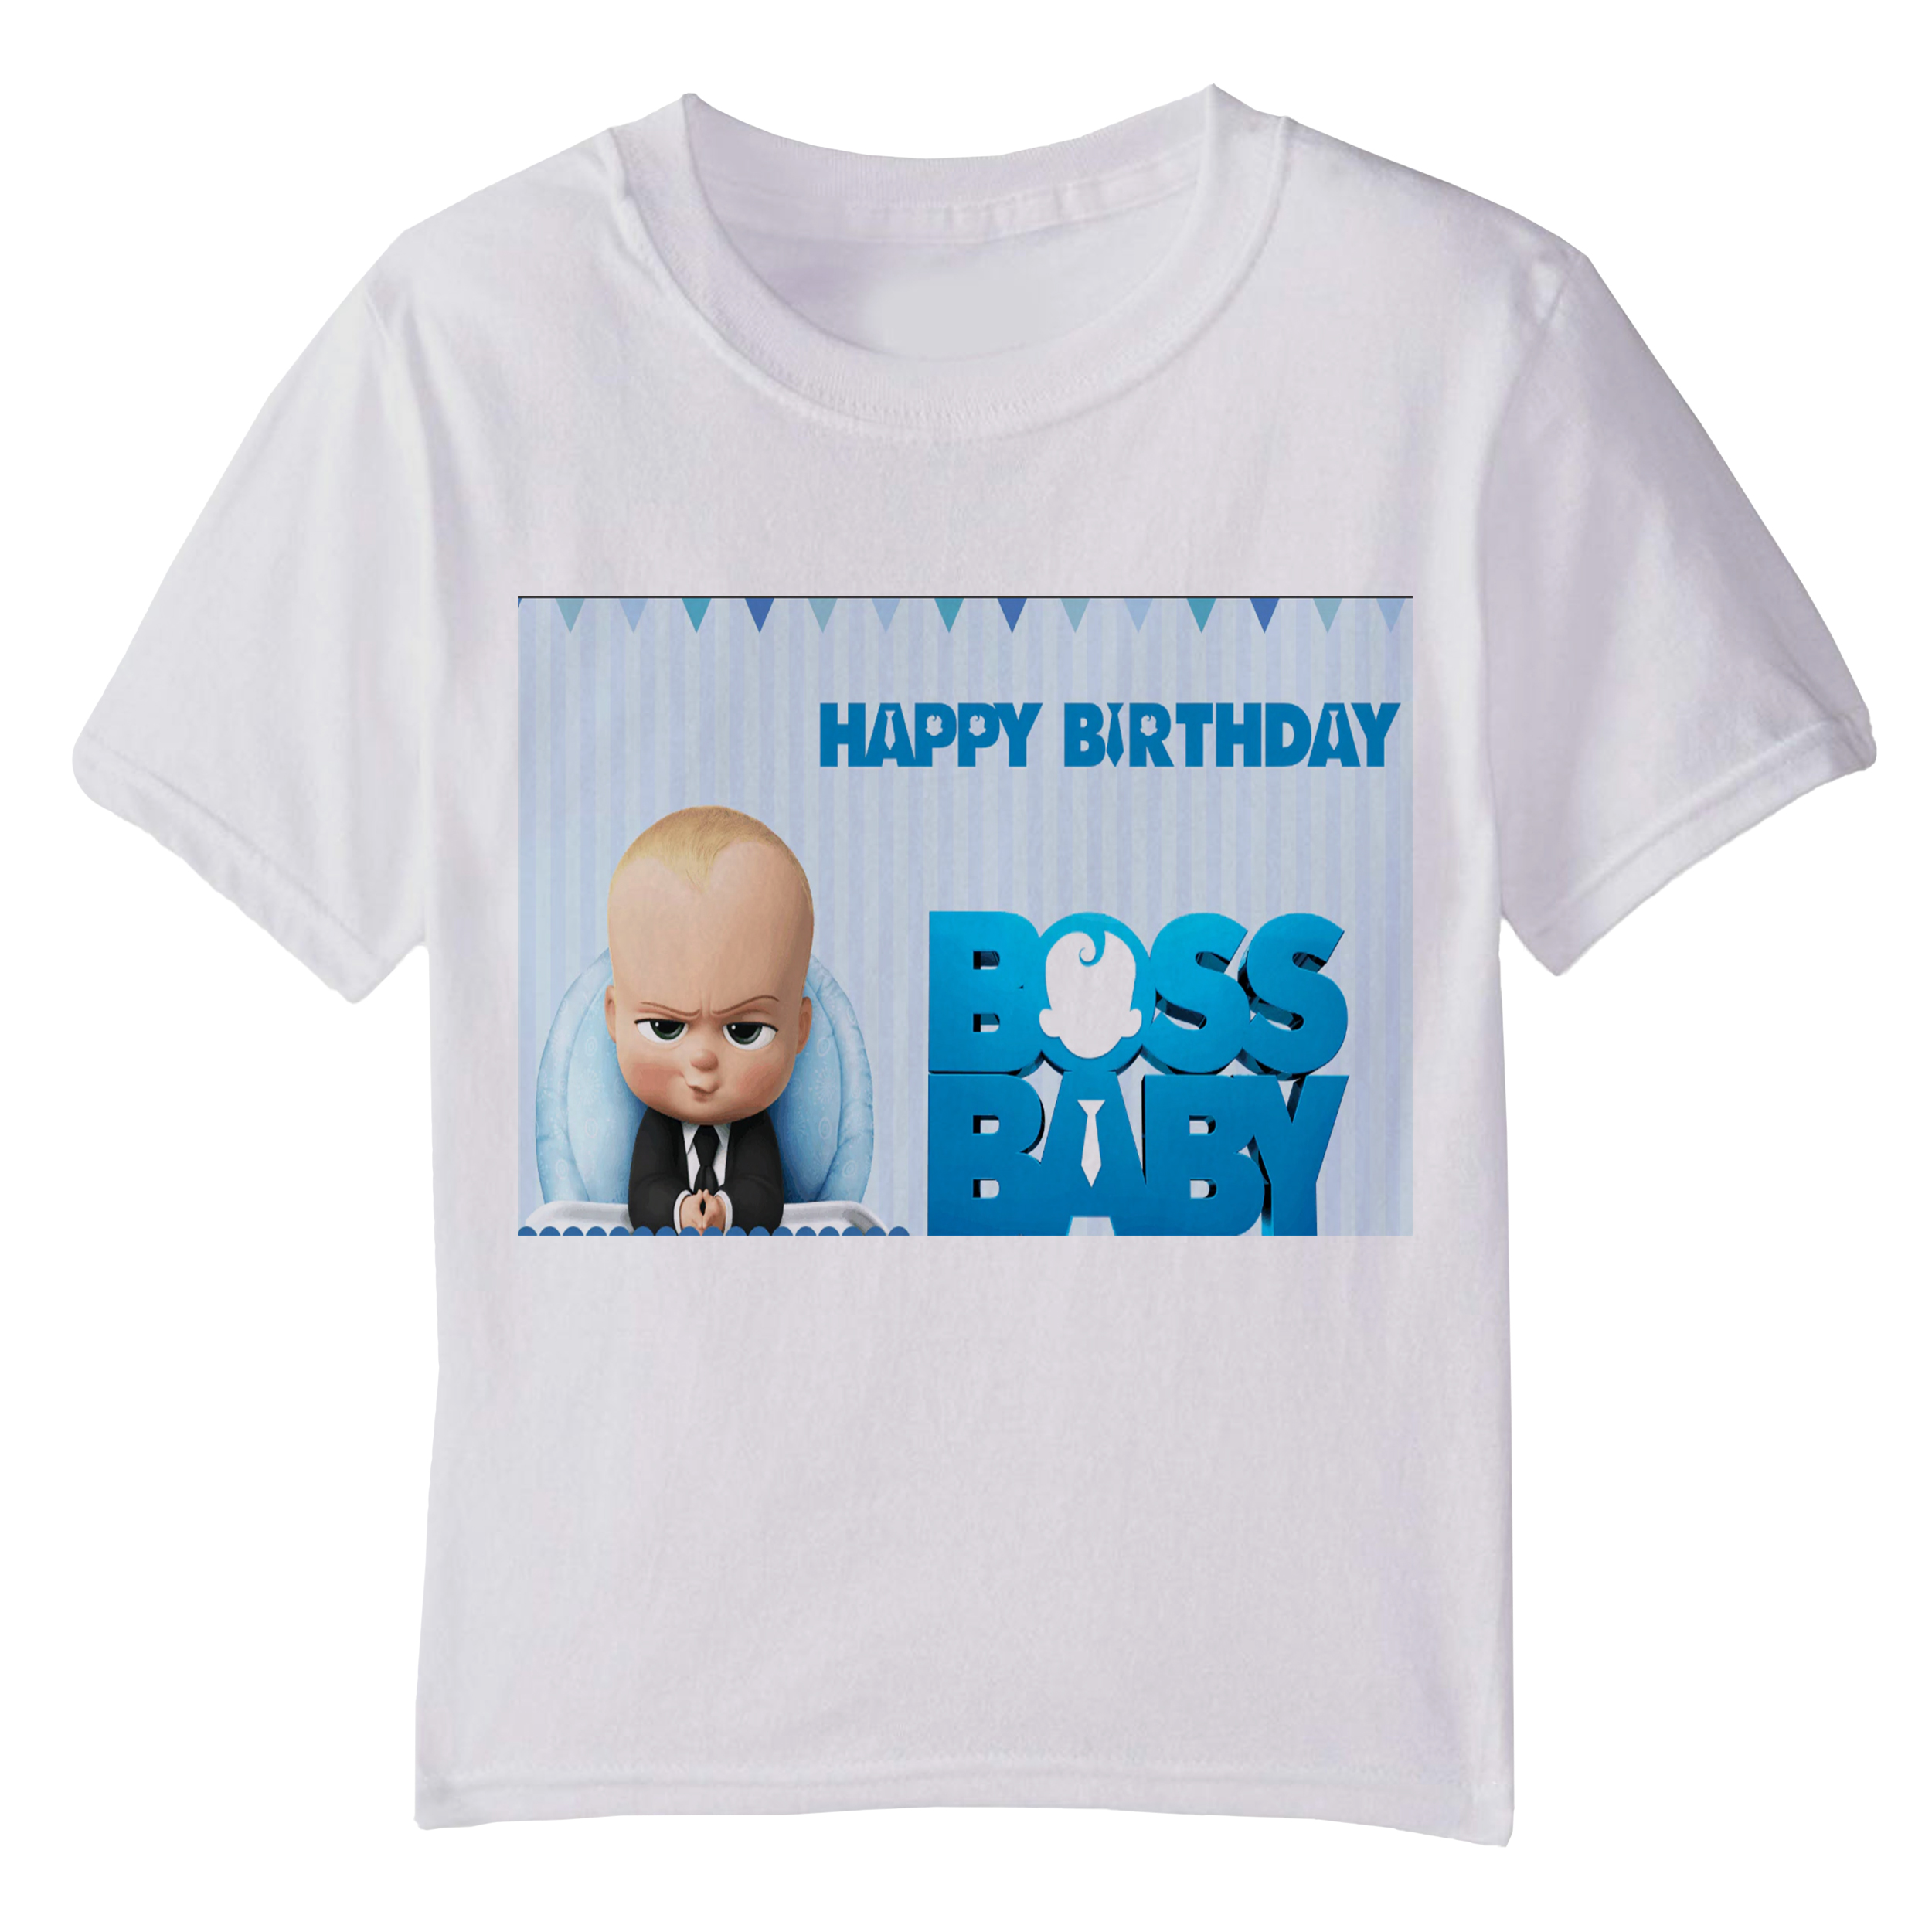 تی شرت آستین کوتاه بچگانه مدل بچه رئیس کد 004